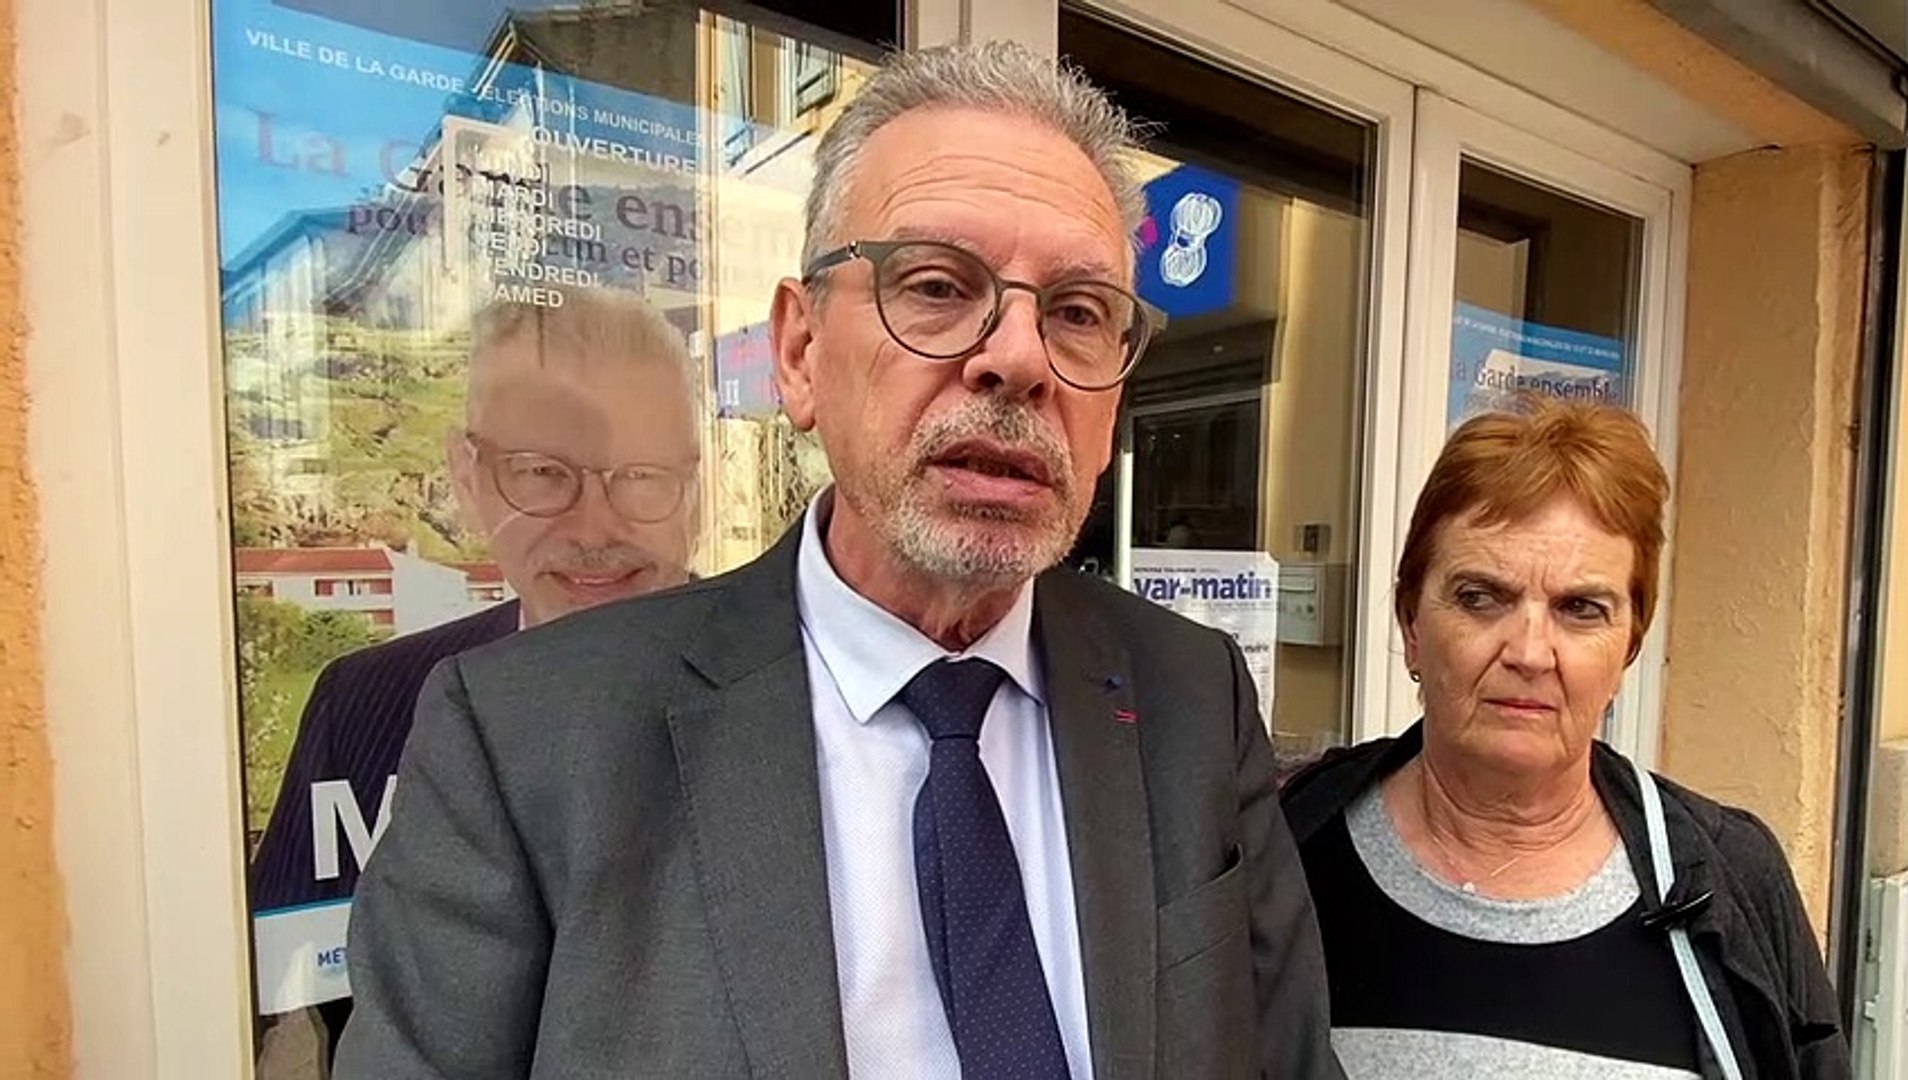 Jean-Louis Masson blessé et outré par les accusations du maire de La Garde  Jean-Claude Charlois - Vidéo Dailymotion